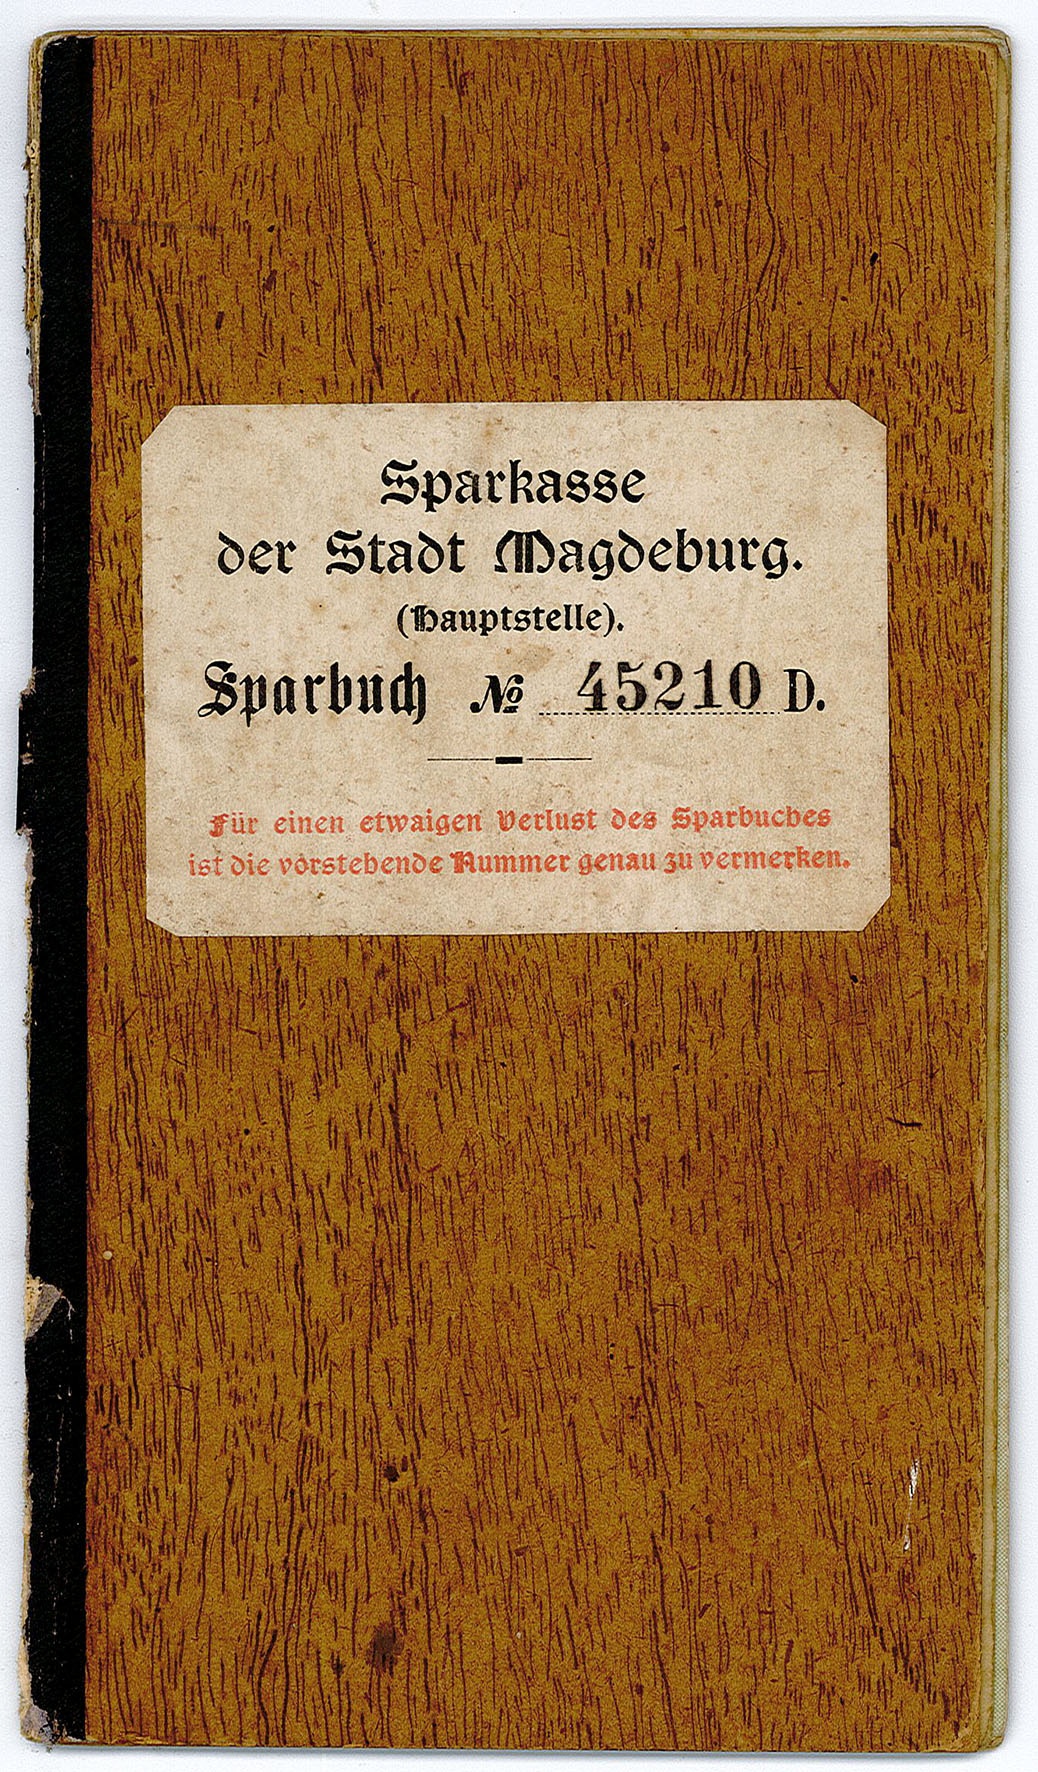 Sparkassenbuch von Paul Wilhelm Jerke, 1919/1920 (Museum Wolmirstedt RR-F)